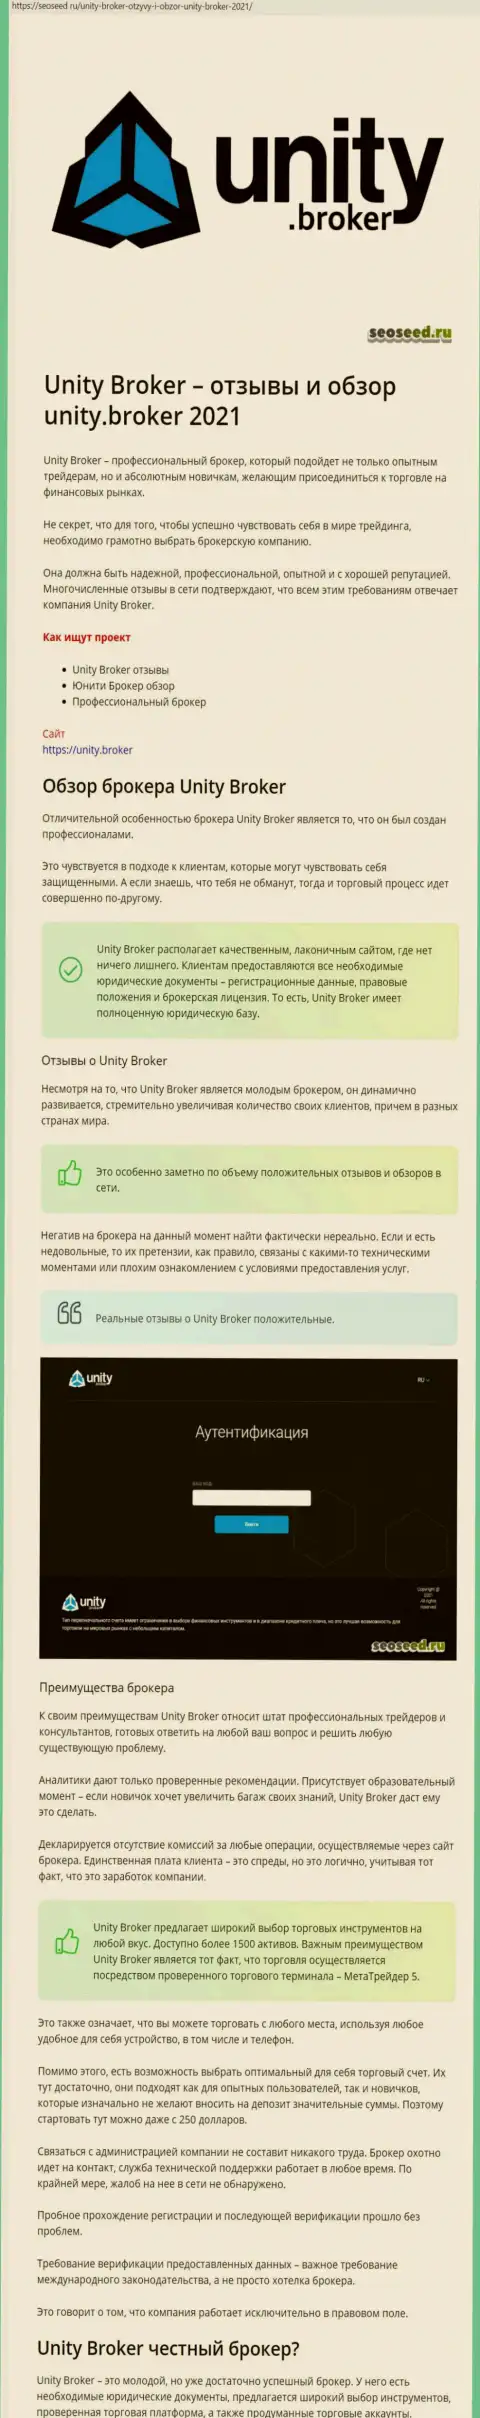 Данные о ФОРЕКС компании Унити Брокер на сайте seoseed ru